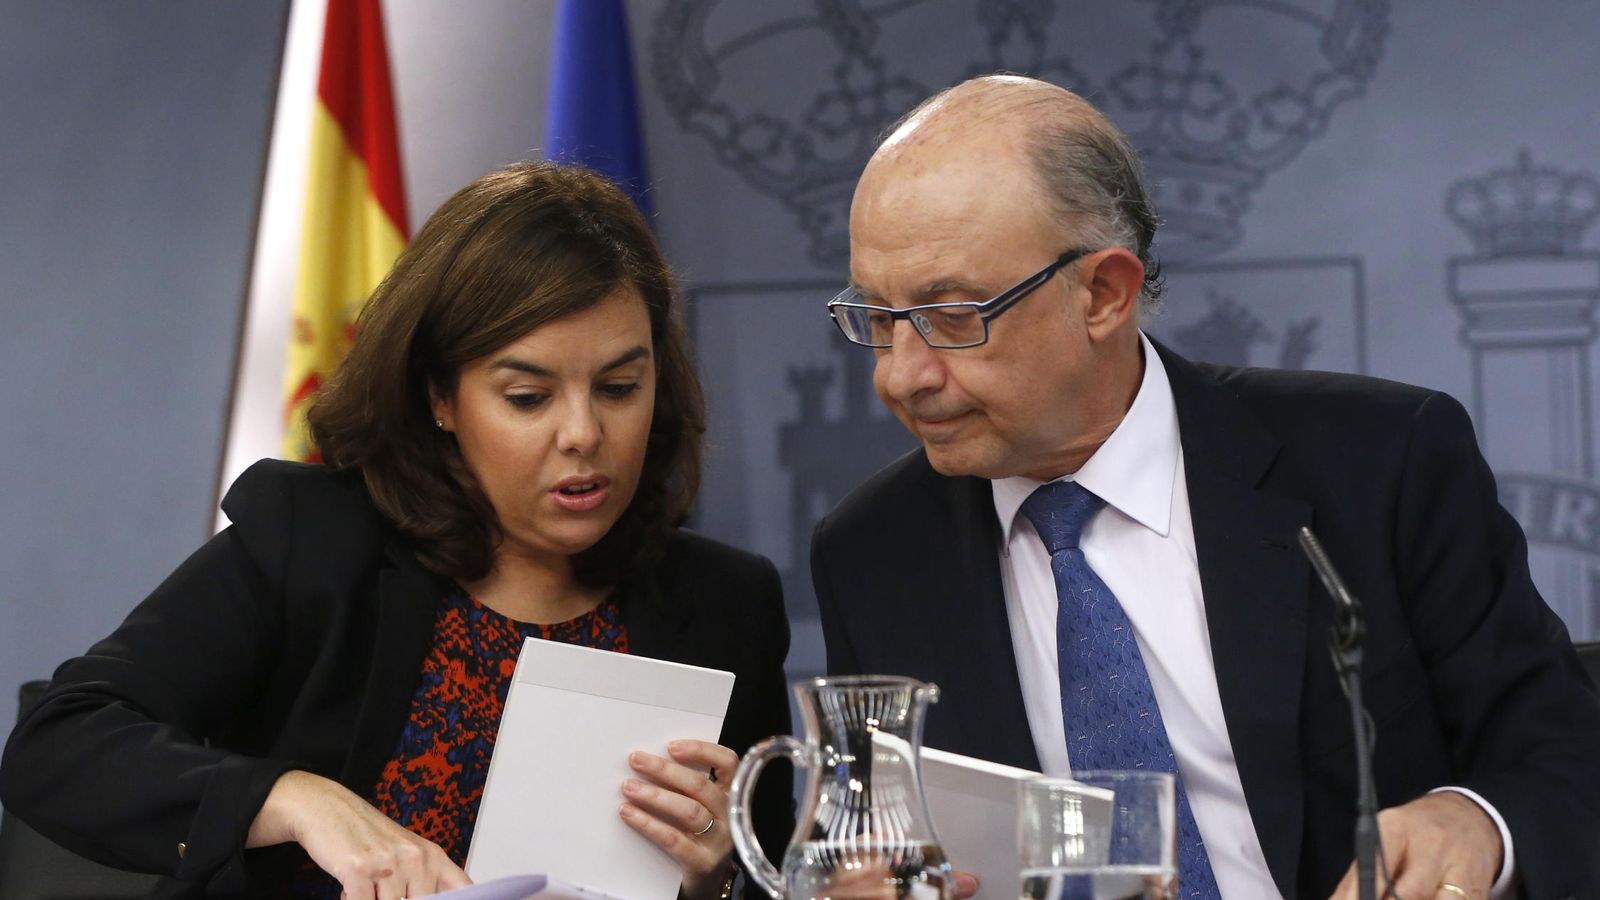 Foto: La vicepresidenta del Gobierno, Soraya Sáenz de Santamaría, junto al ministro de Hacienda, Cristóbal Montoro. (EFE)